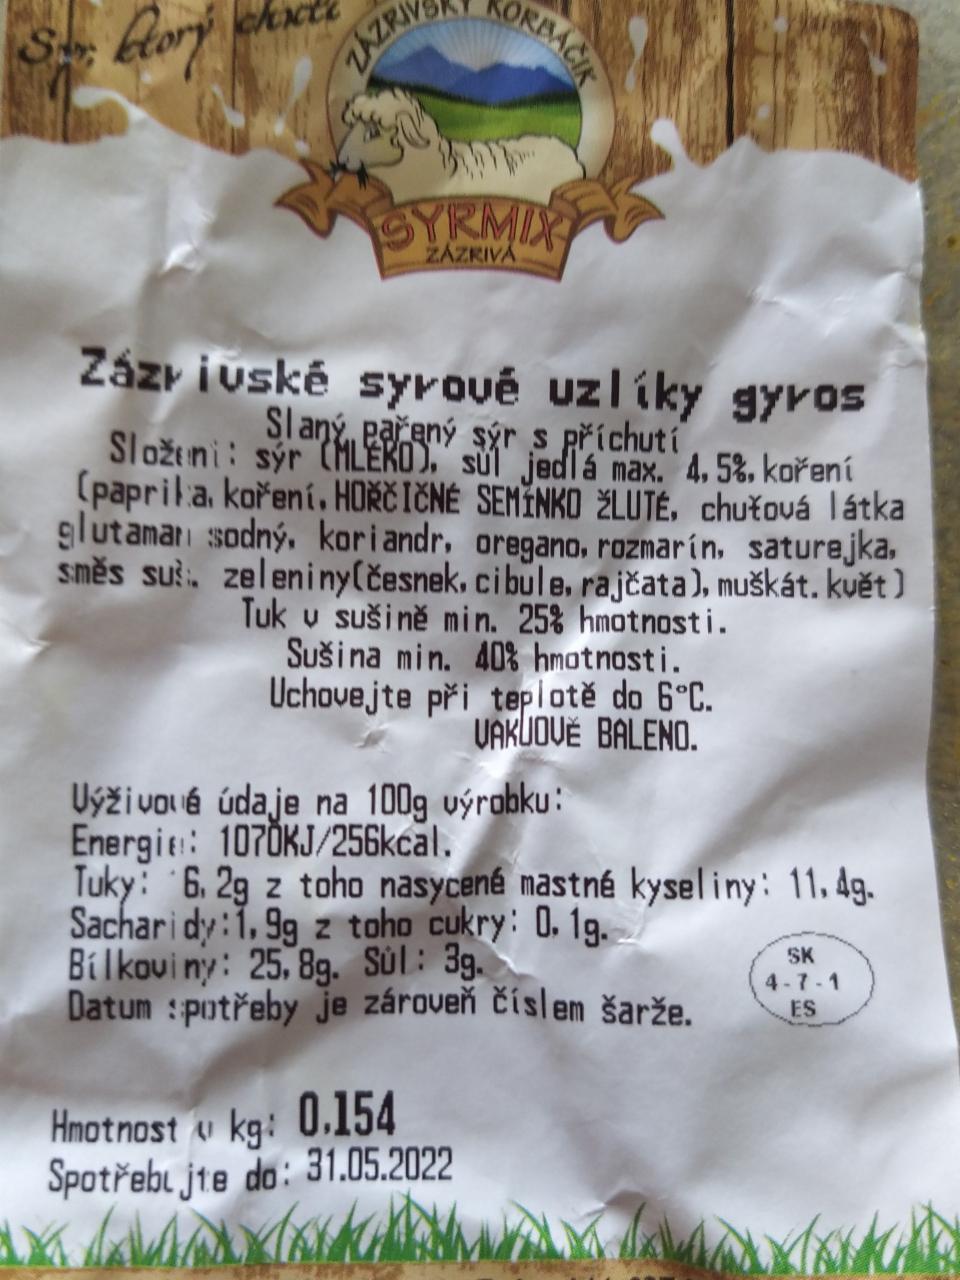 Fotografie - Zazrivske sýrove uzlíky gyros